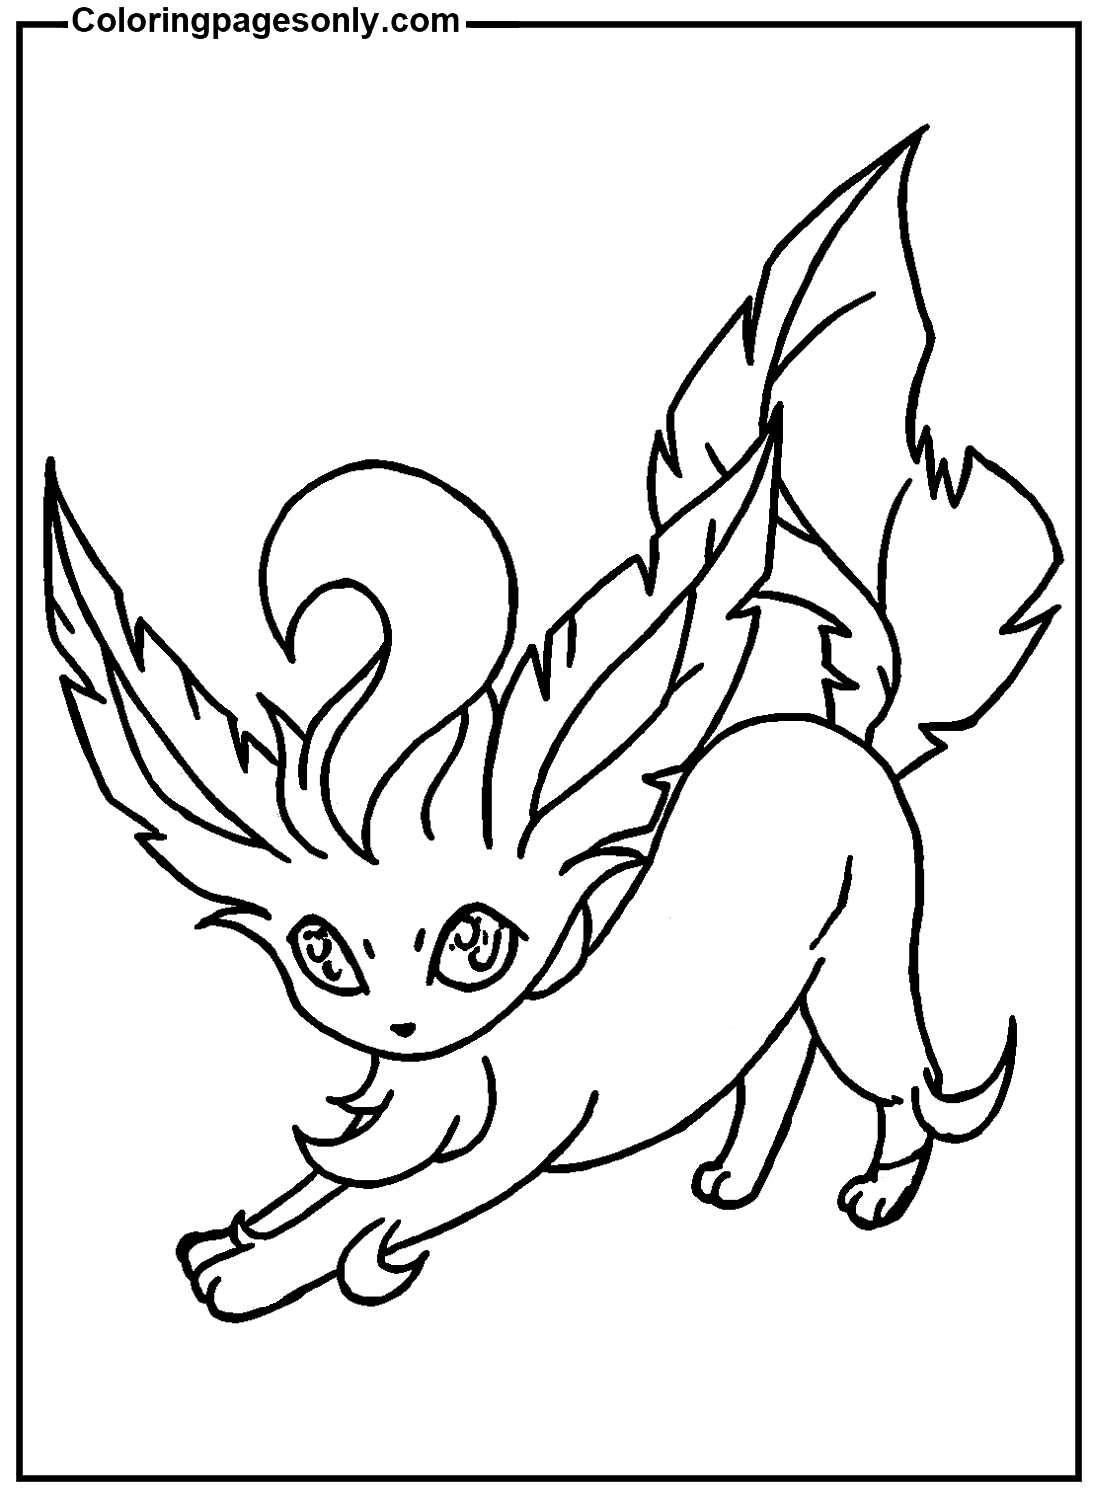 Imagem de Pokémon Leafeon de Leafeon